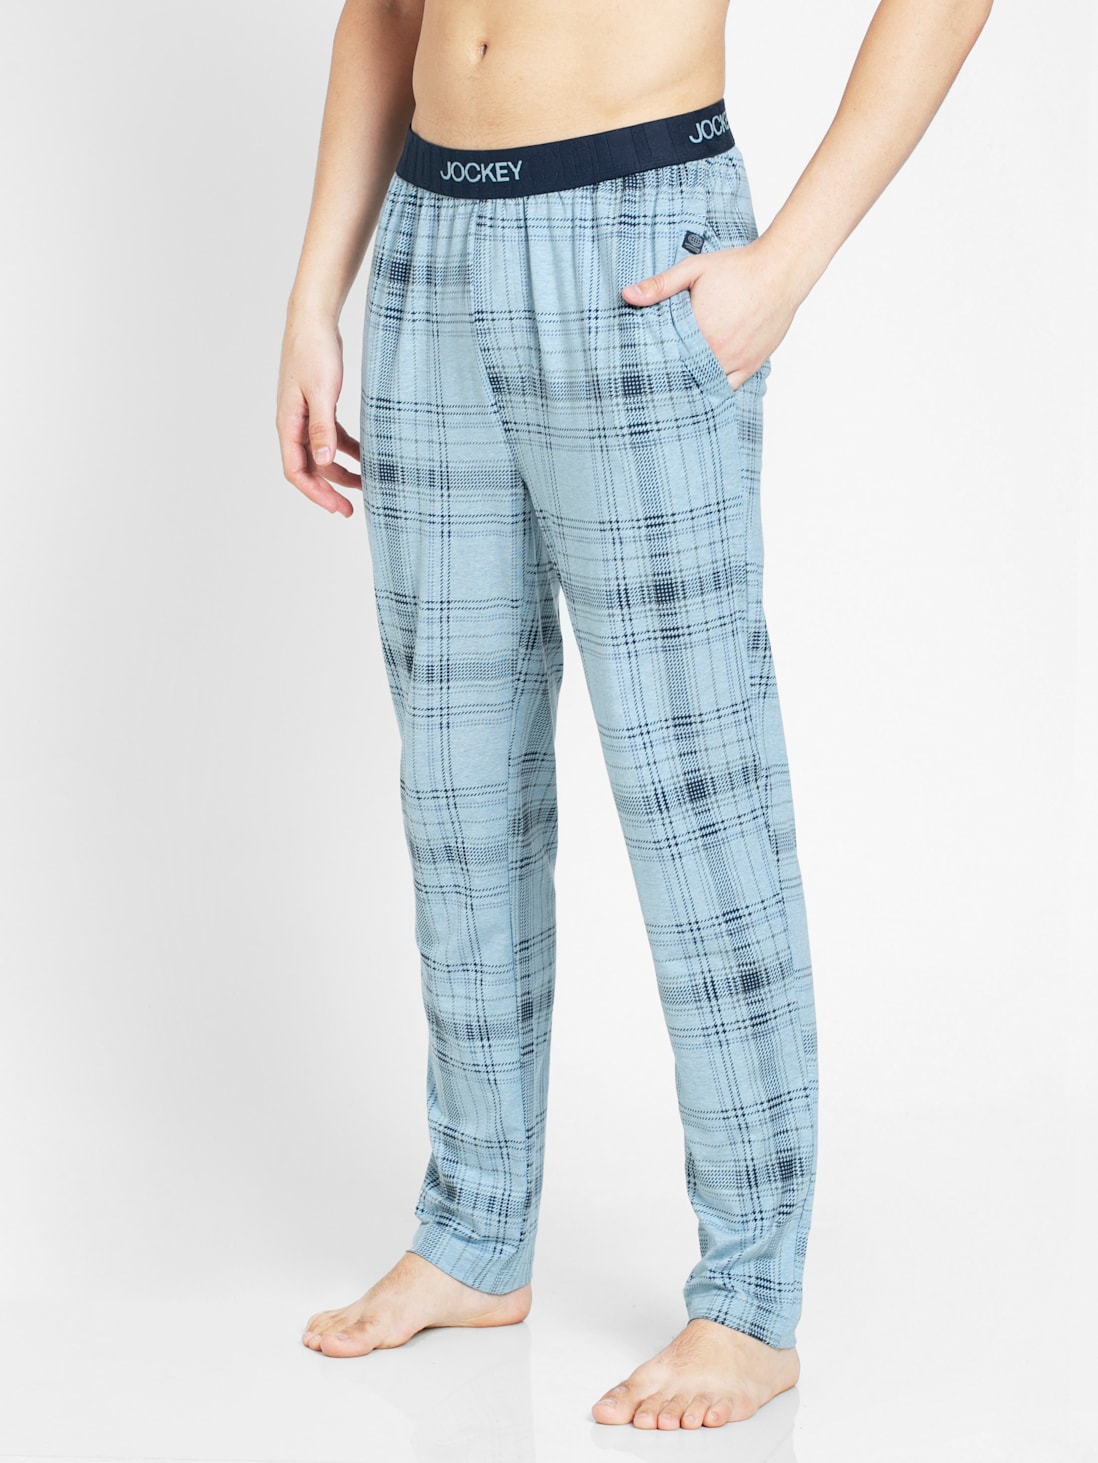 Pajama  Buy White Cotton Elastic Pajama Online In India  Rajubhai  Hargovindas Pyjama Wiast 34 Pyjama Length 40